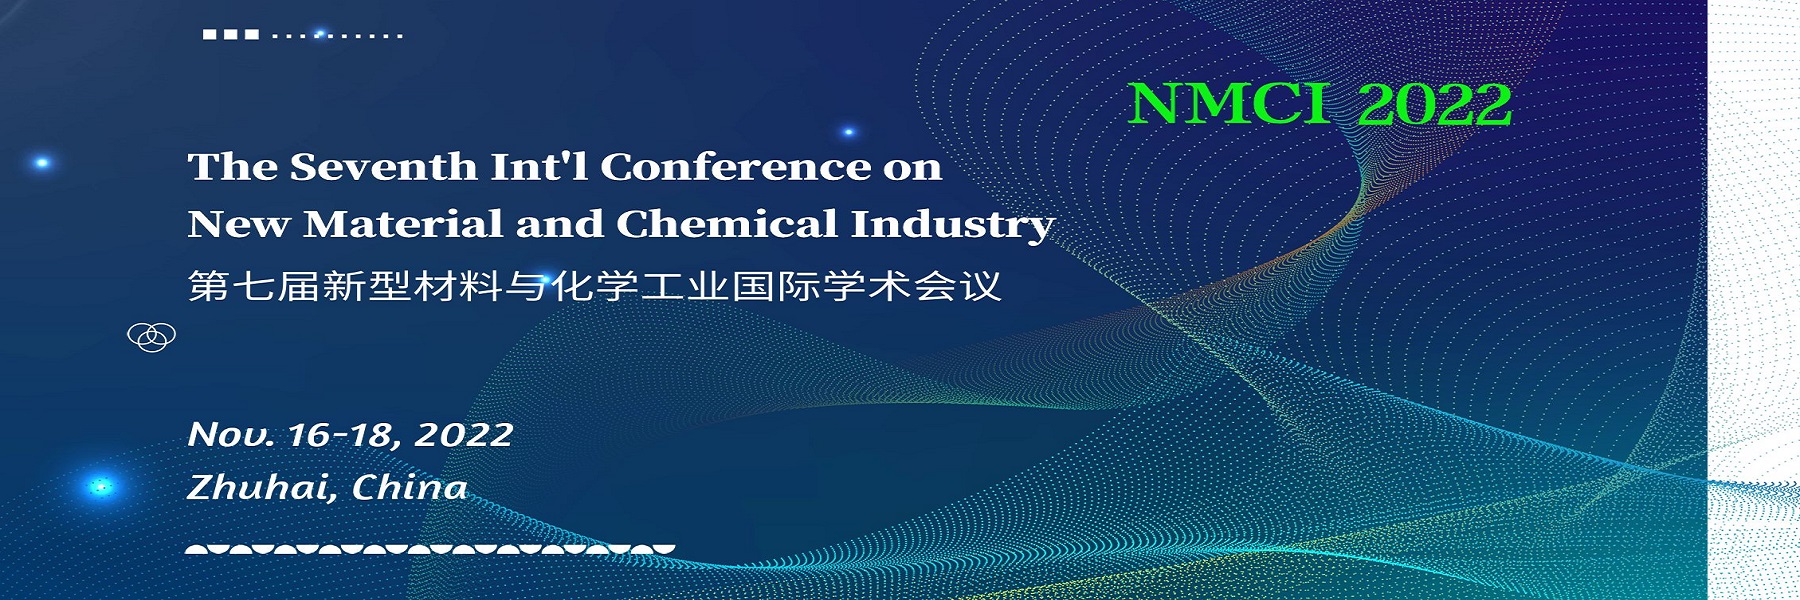 新型材料与化学工业国际学术会议